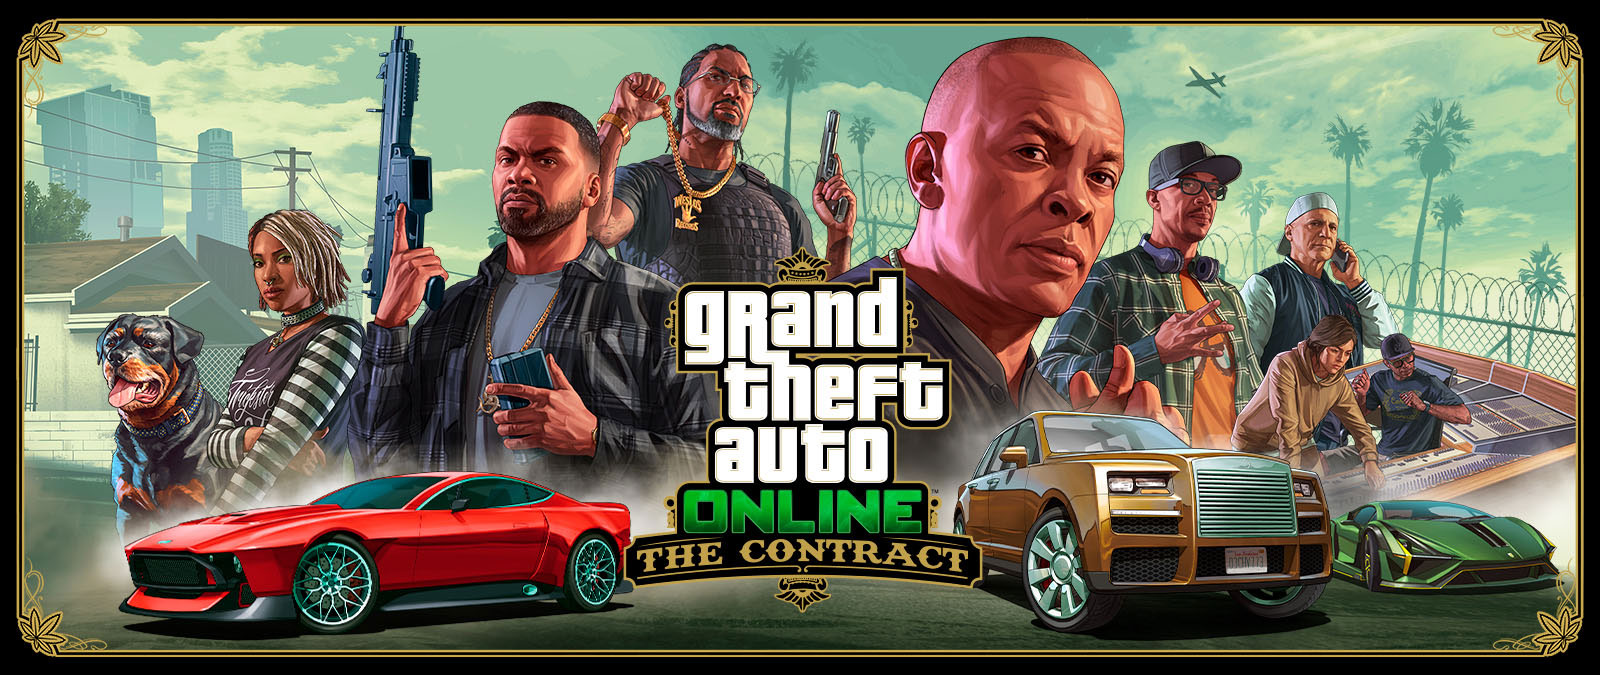 Grand Theft Auto Online, The Contract, 이국적인 자동차 세 대 뒤로 프랭클린과 다른 친구 일곱 명, 개 찹이 줄지어 서 있습니다. 